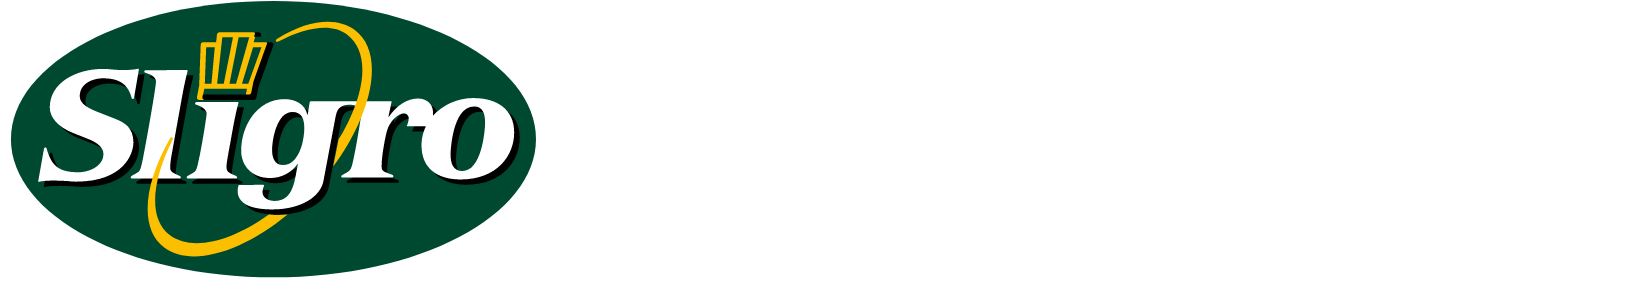 Sligro Food logo large for dark backgrounds (transparent PNG)